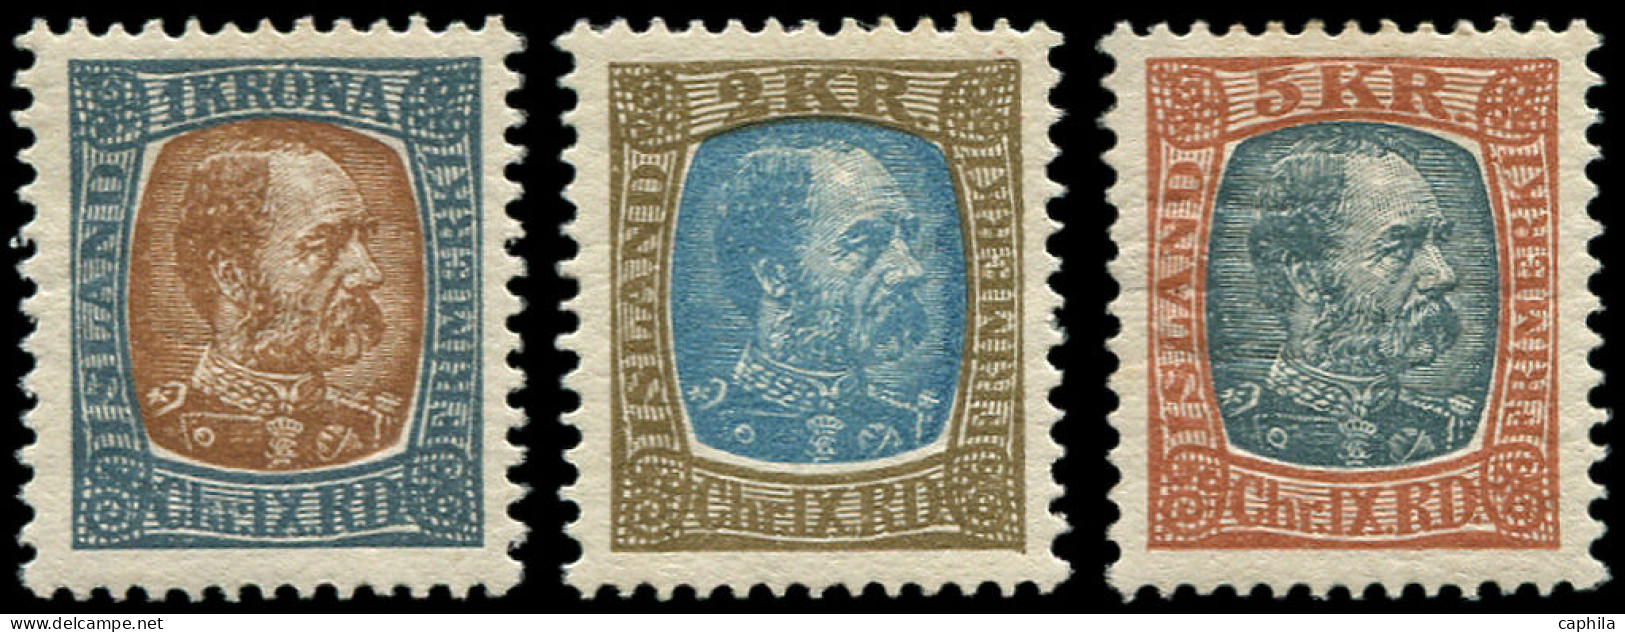 ** ISLANDE - Poste - 44/46, Christian IX - Unused Stamps